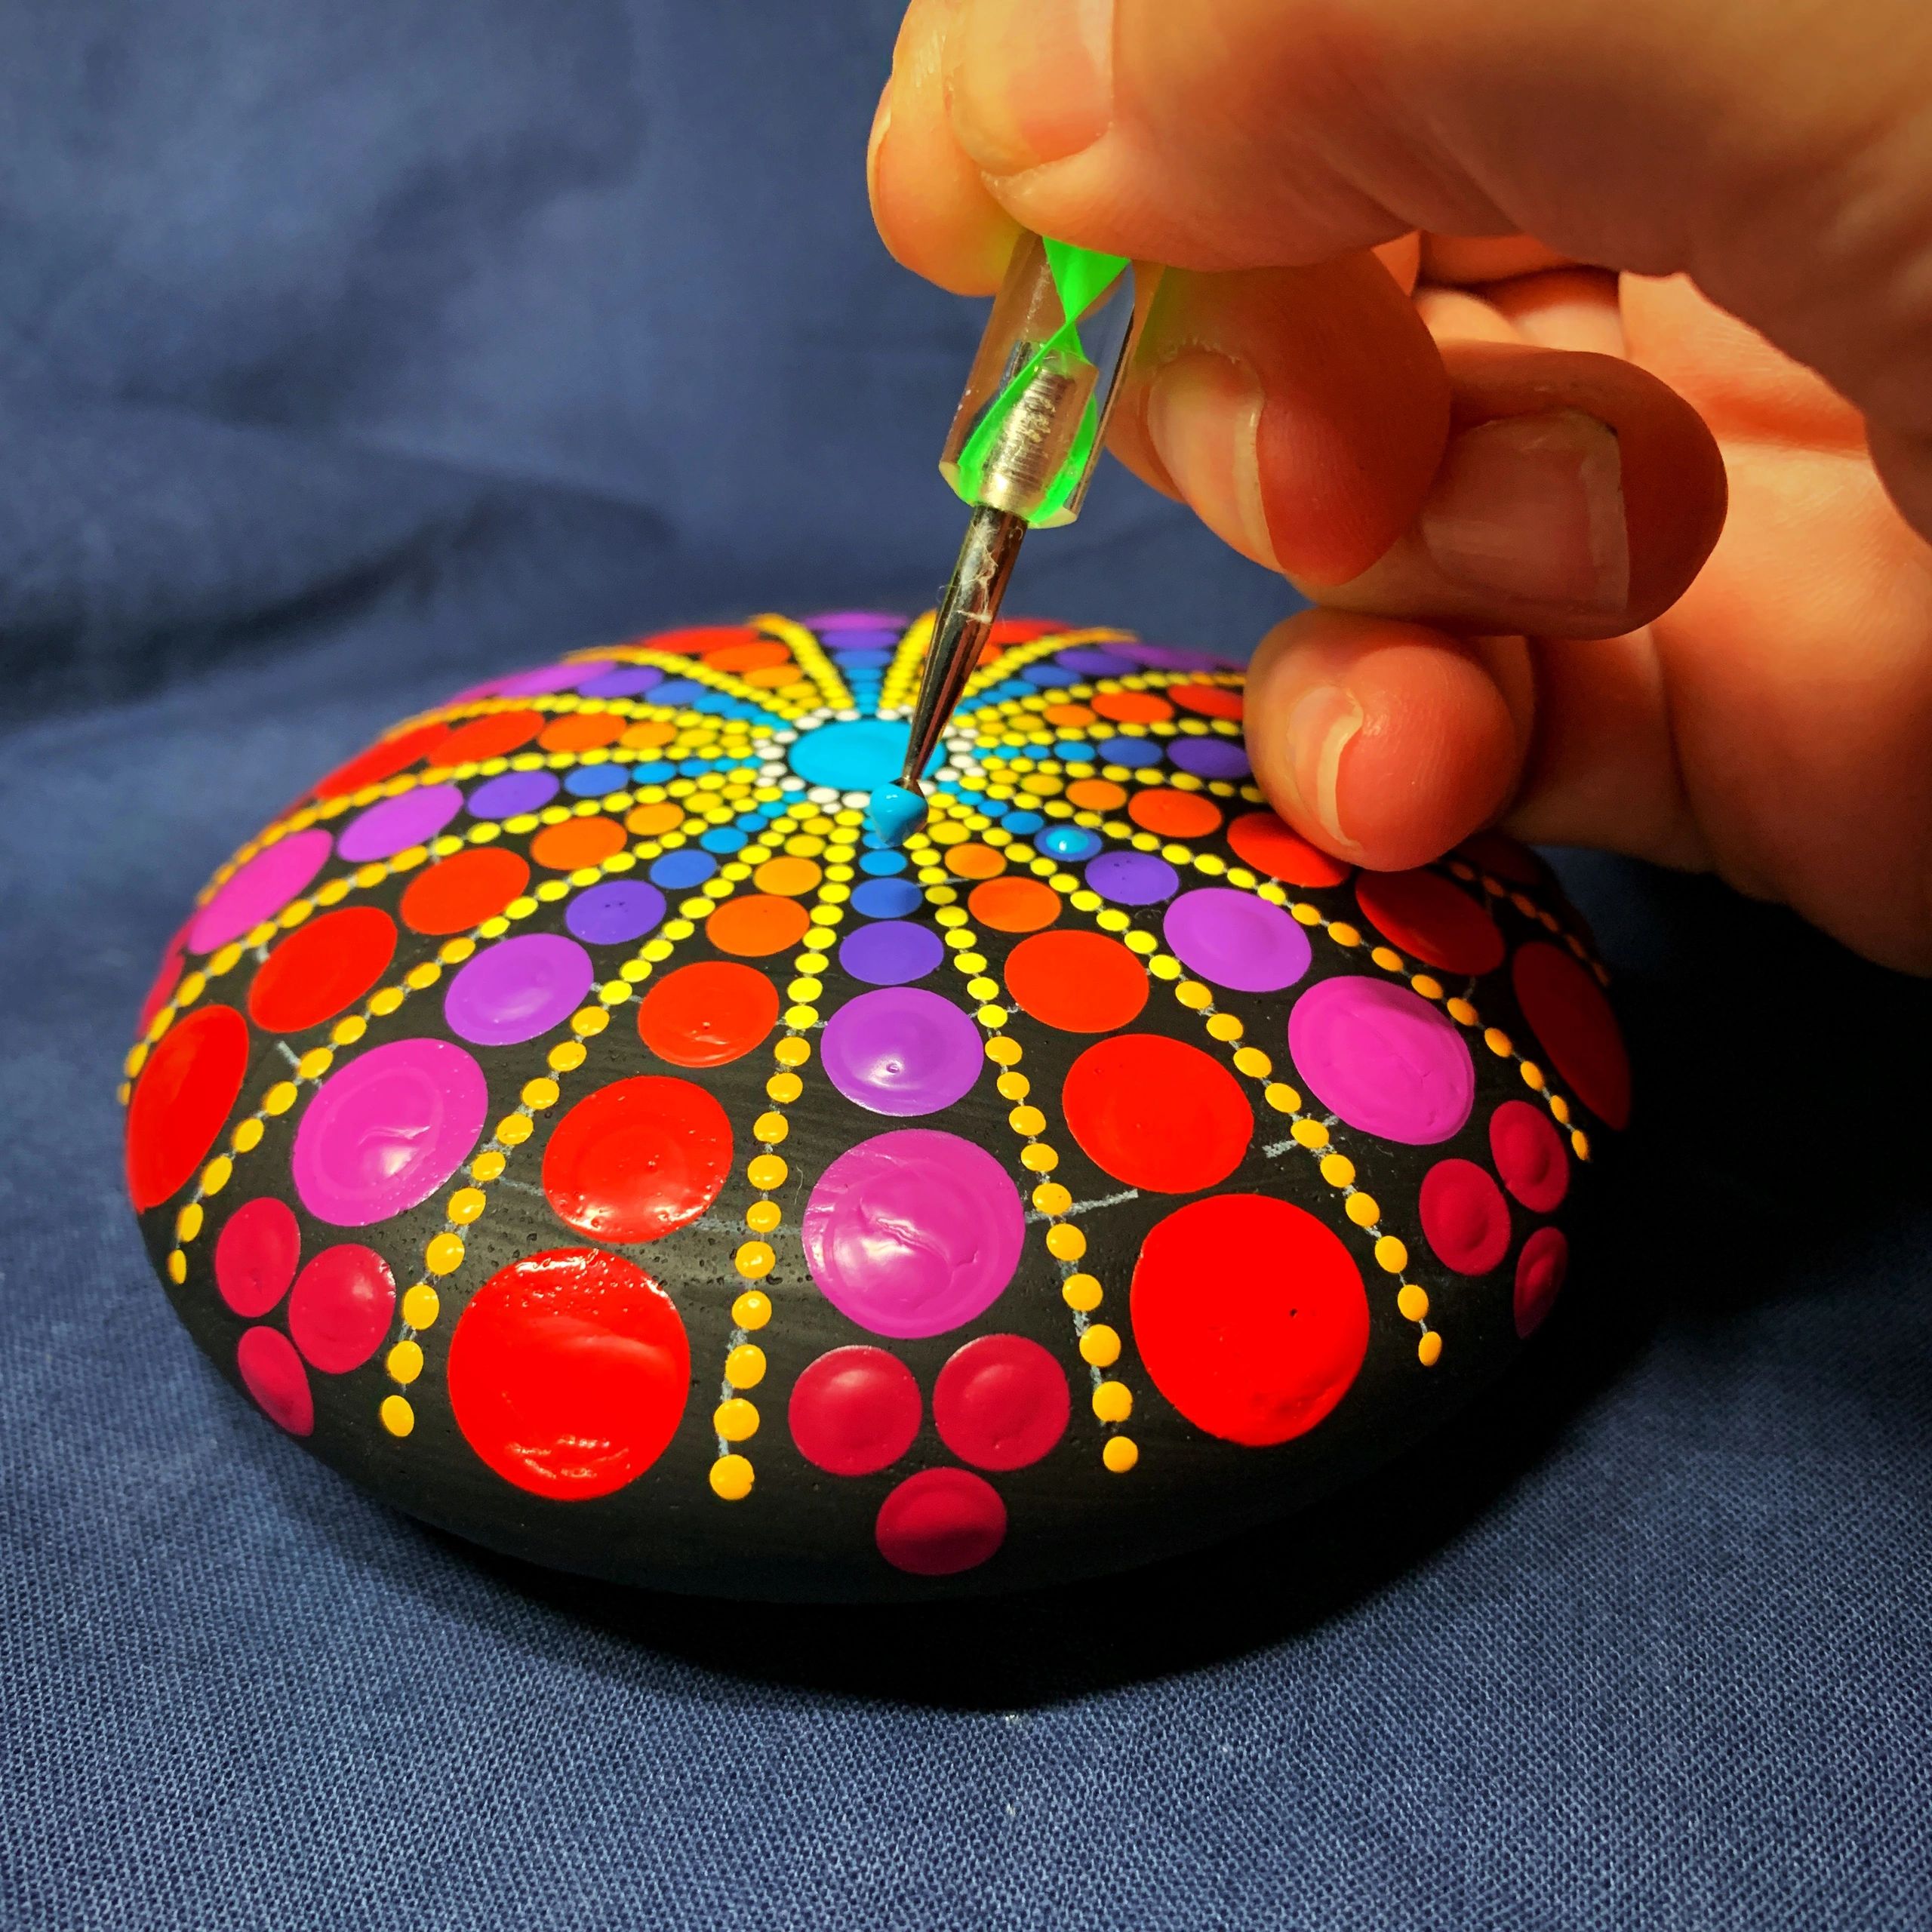 Happy Dotting Company - Dot Painting Ideas, Dotting Tools